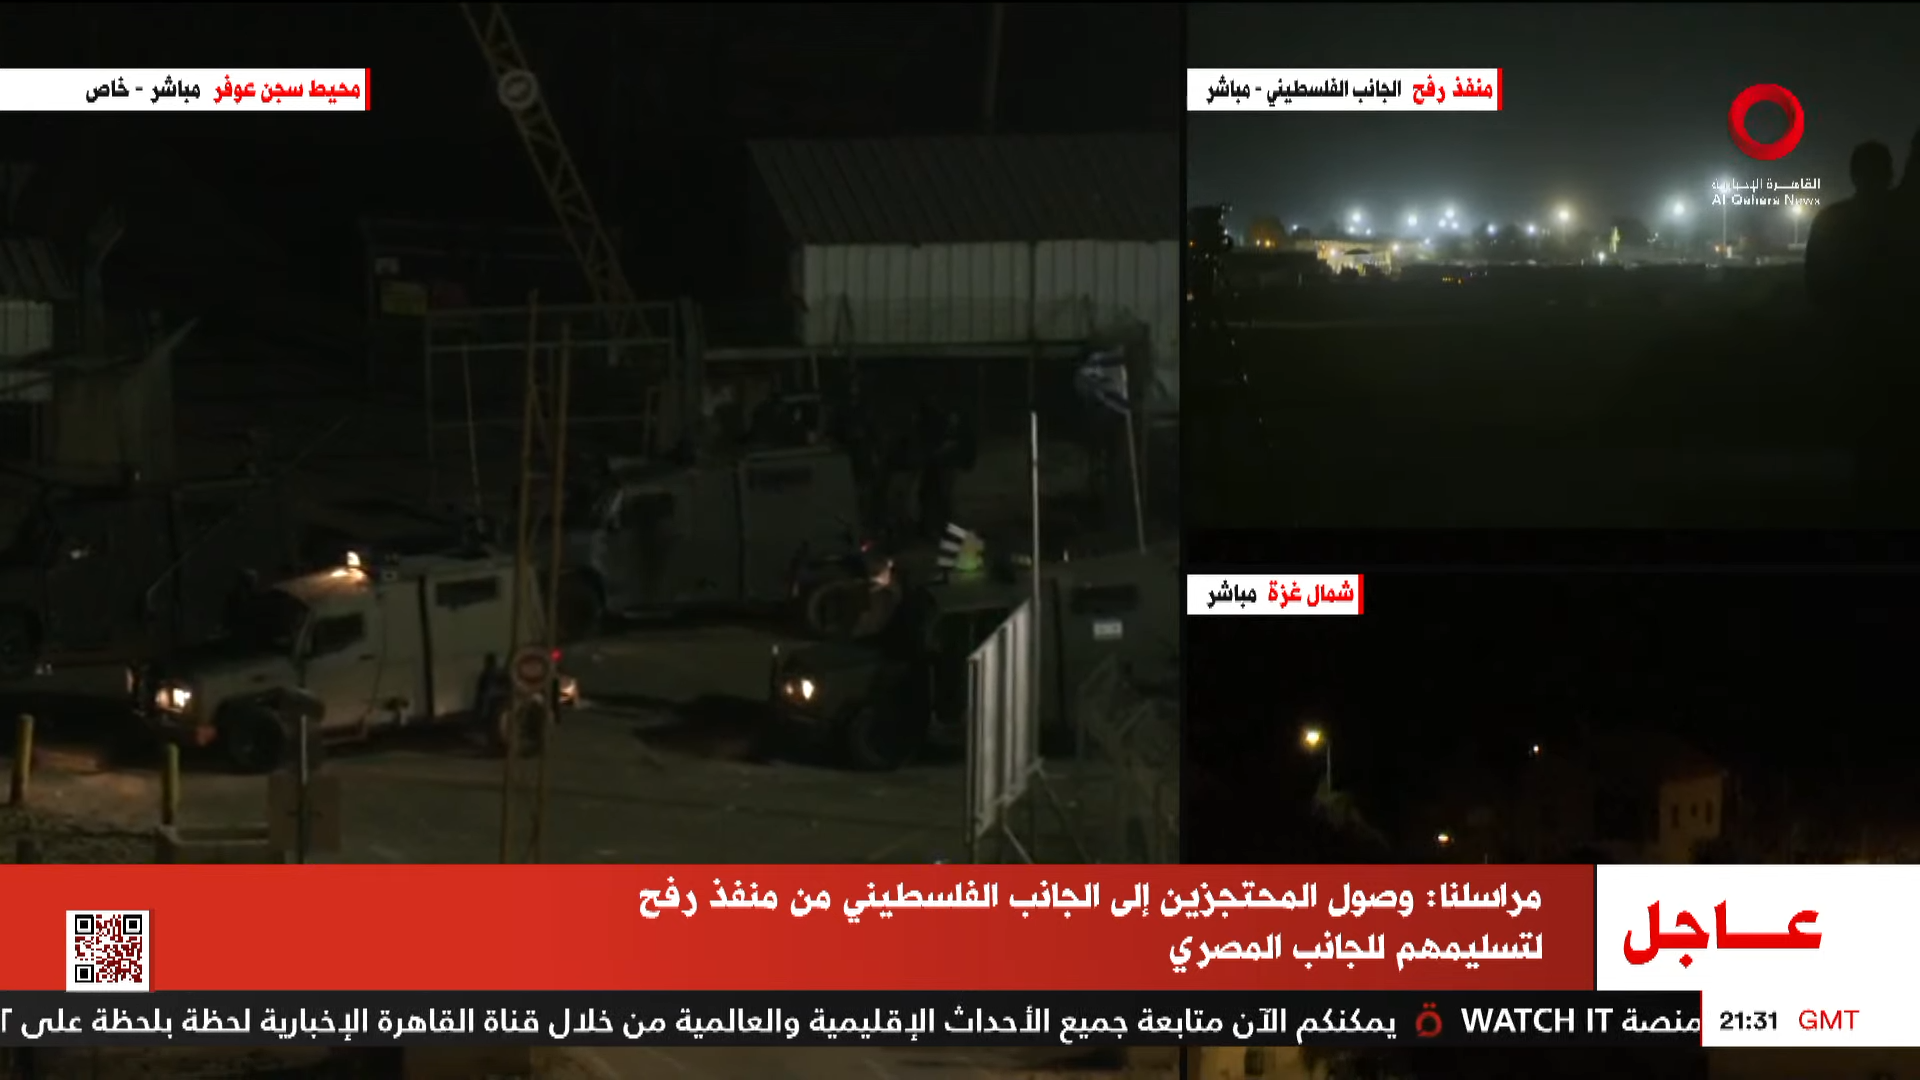 البث المباشر لقناة القاهرة الإخبارية - AlQaheraNews Live Stream 13-1-4 screenshot